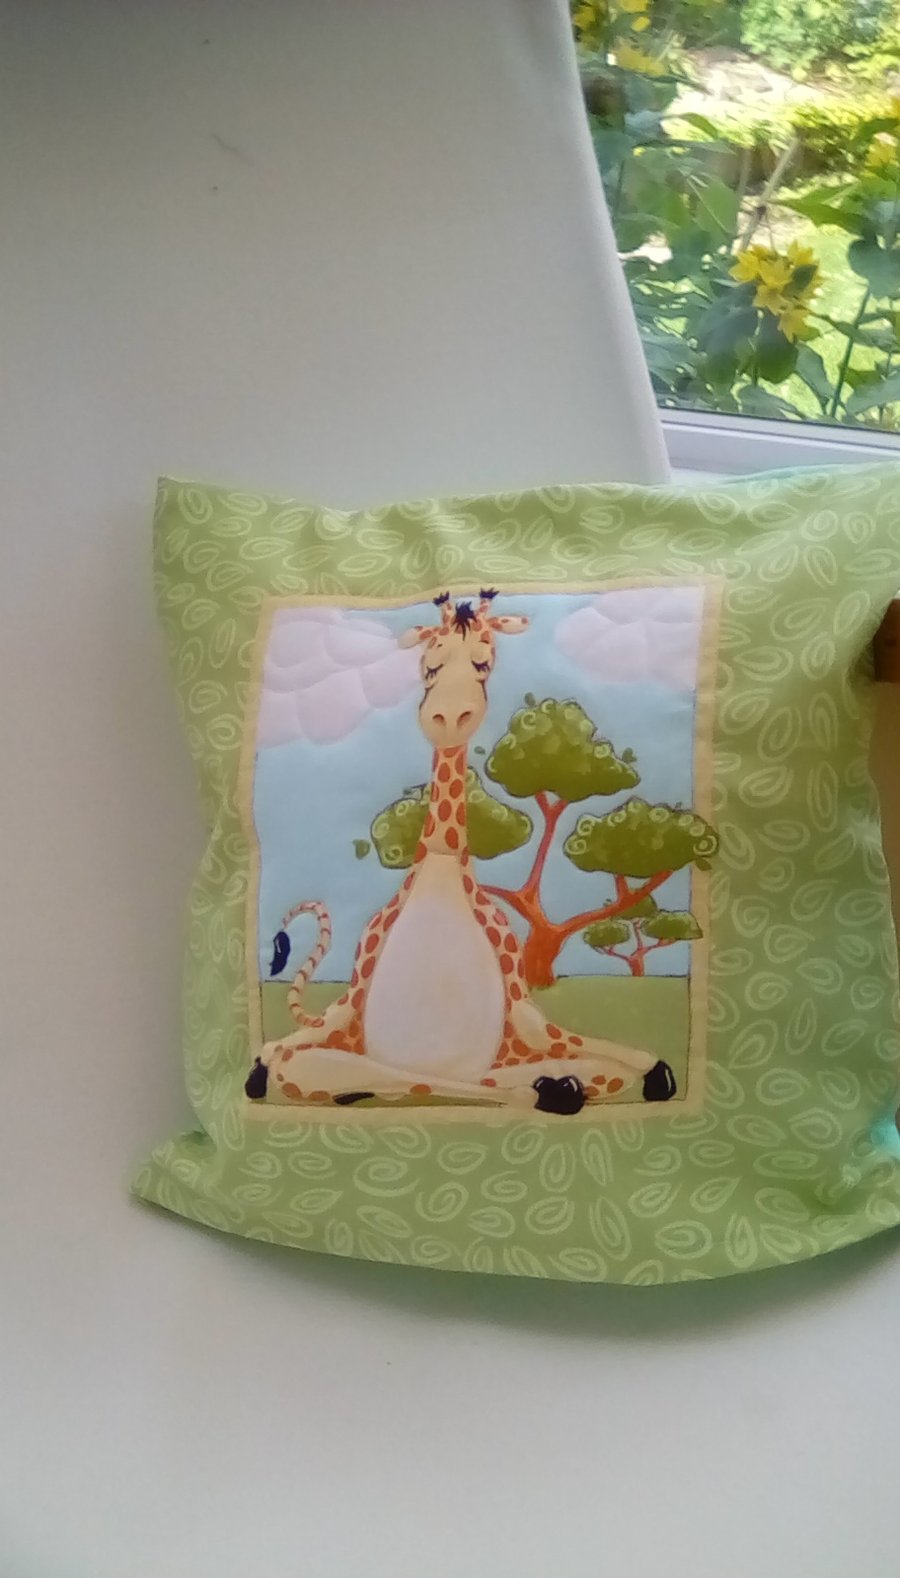 Giraffe Cushion, Quilted Cushion, Children's Cushion